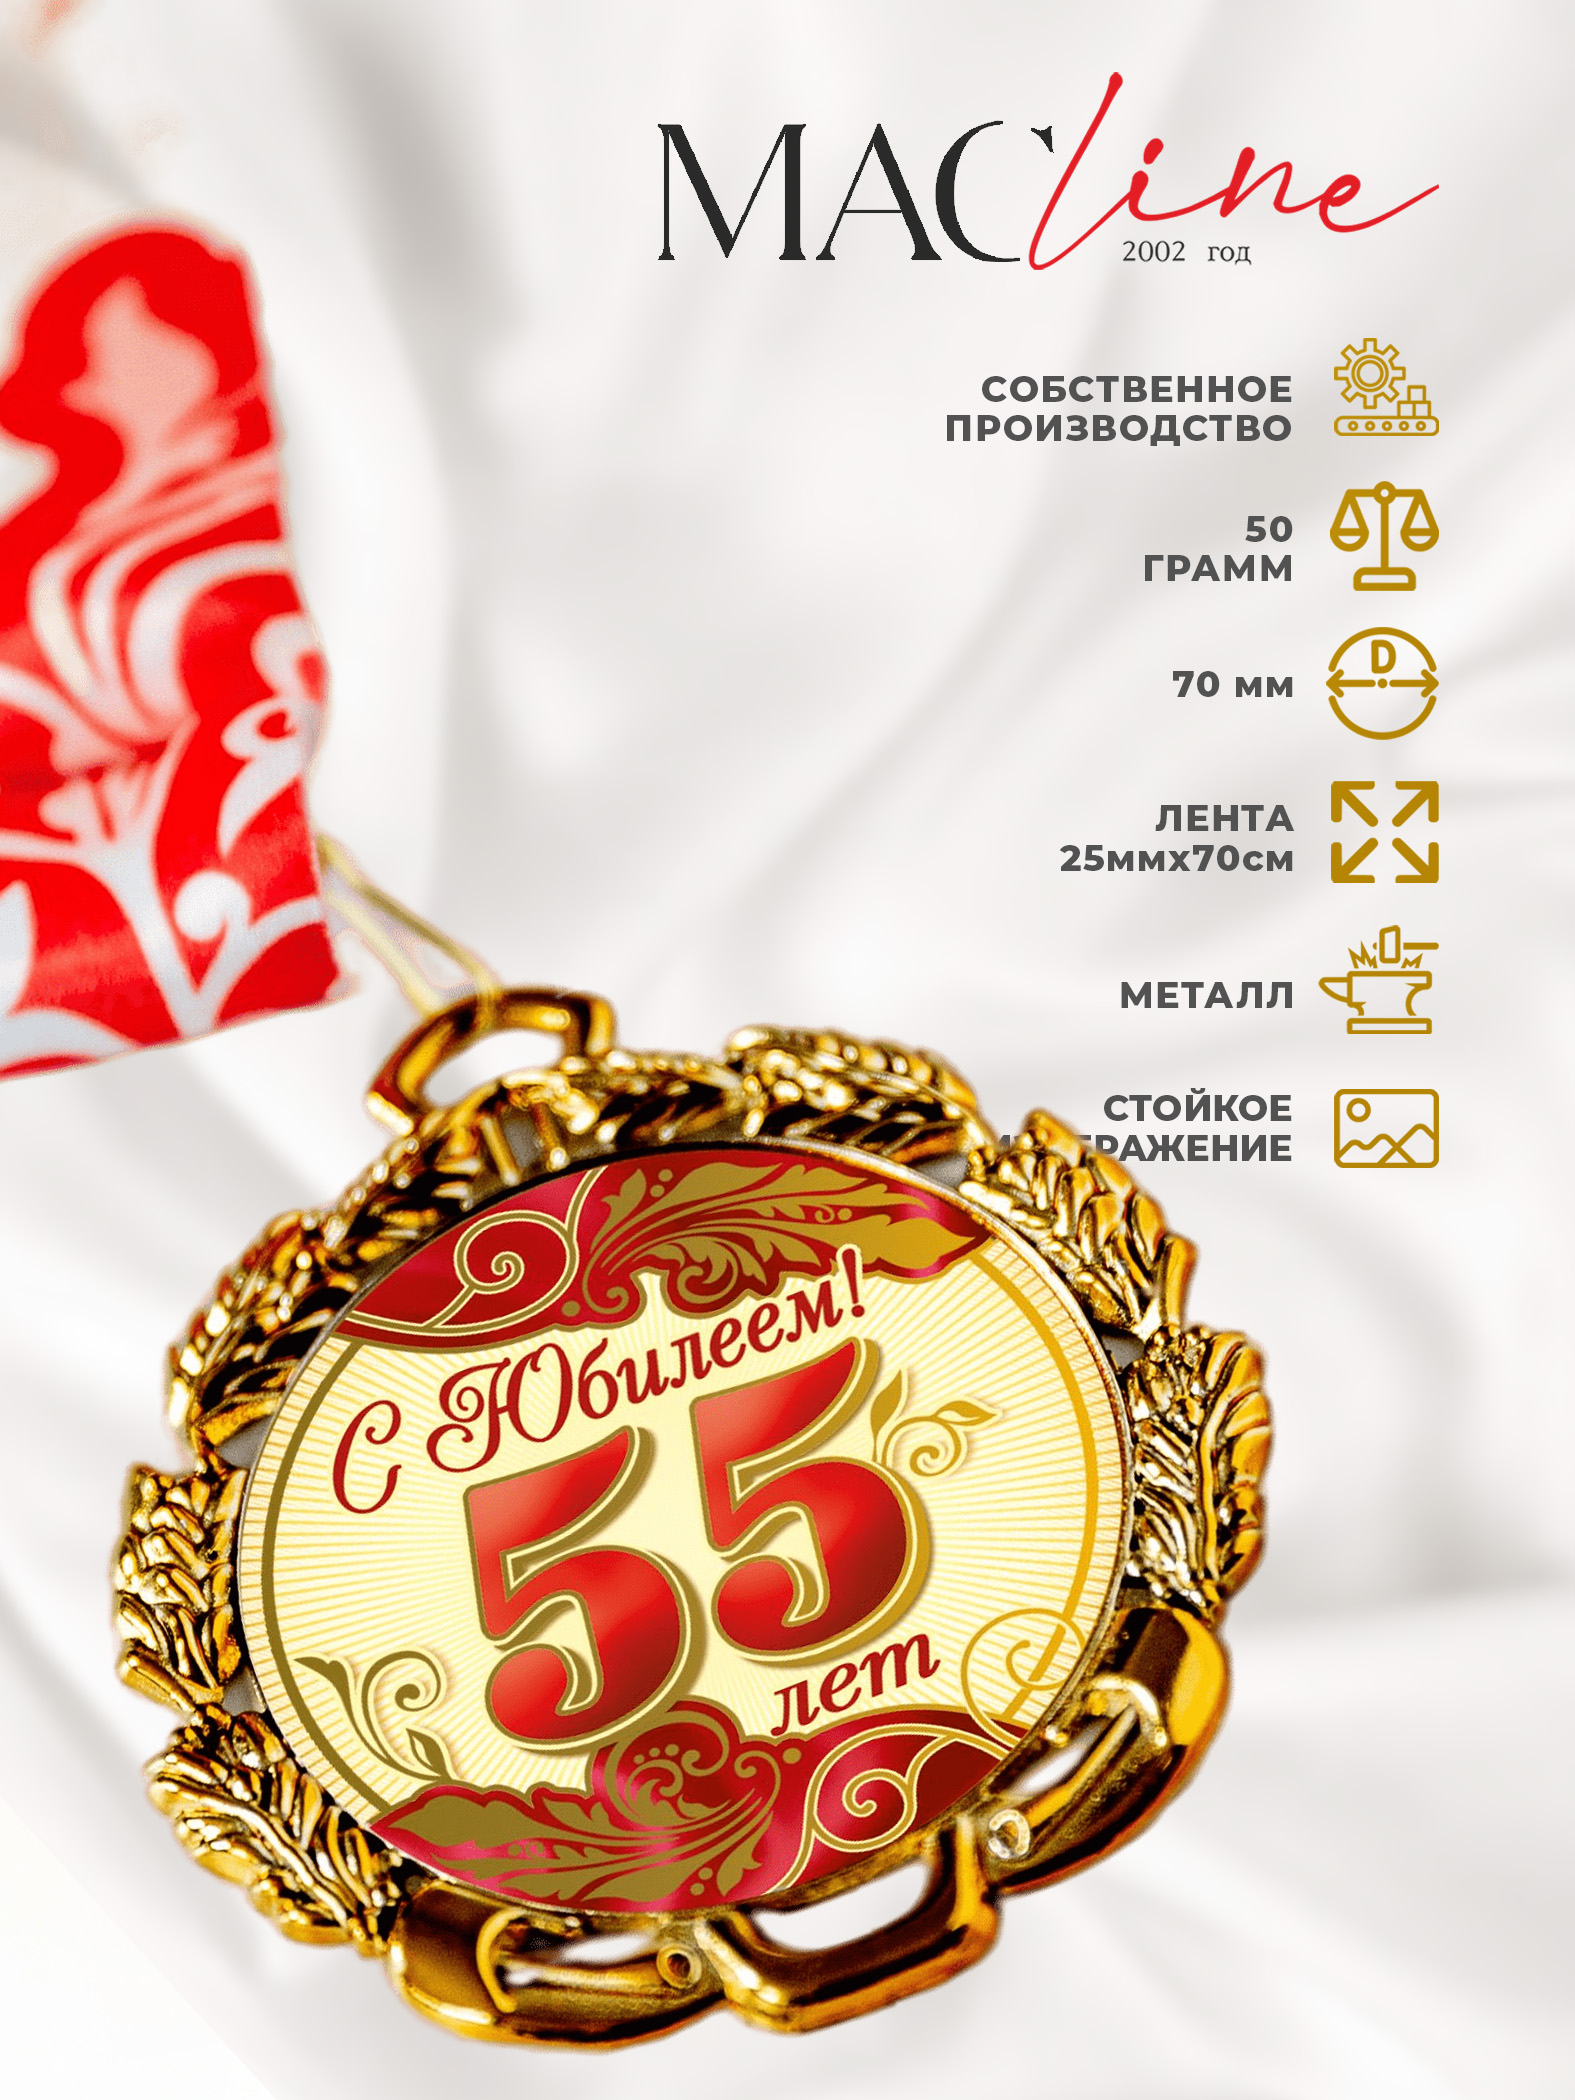 Медаль металлическая "С Юбилеем 55лет" с лентой